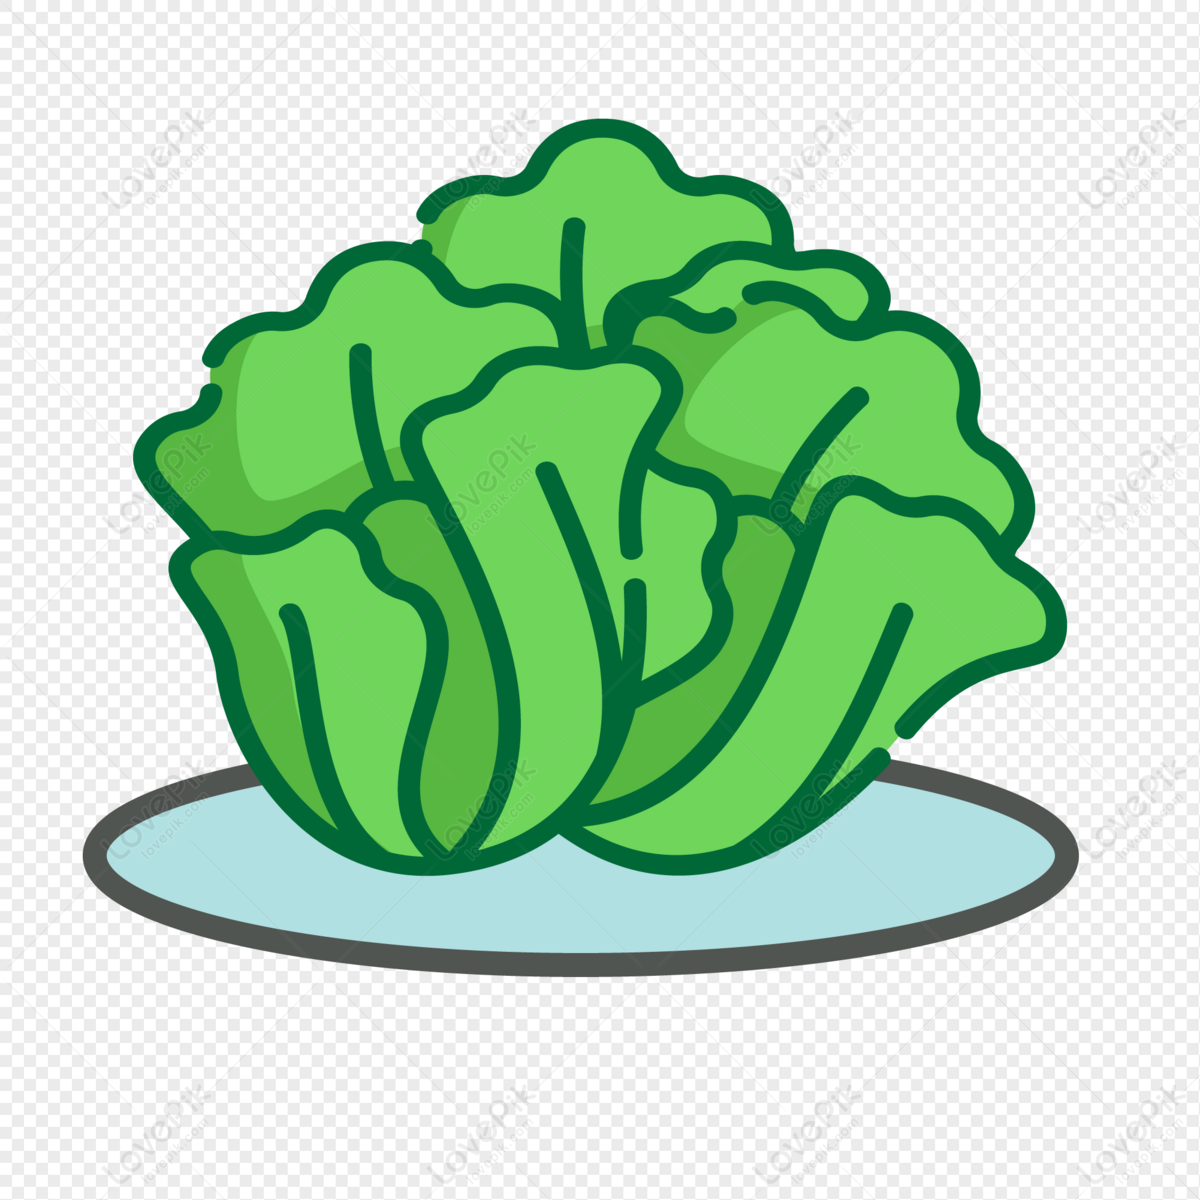 lettuce vector png